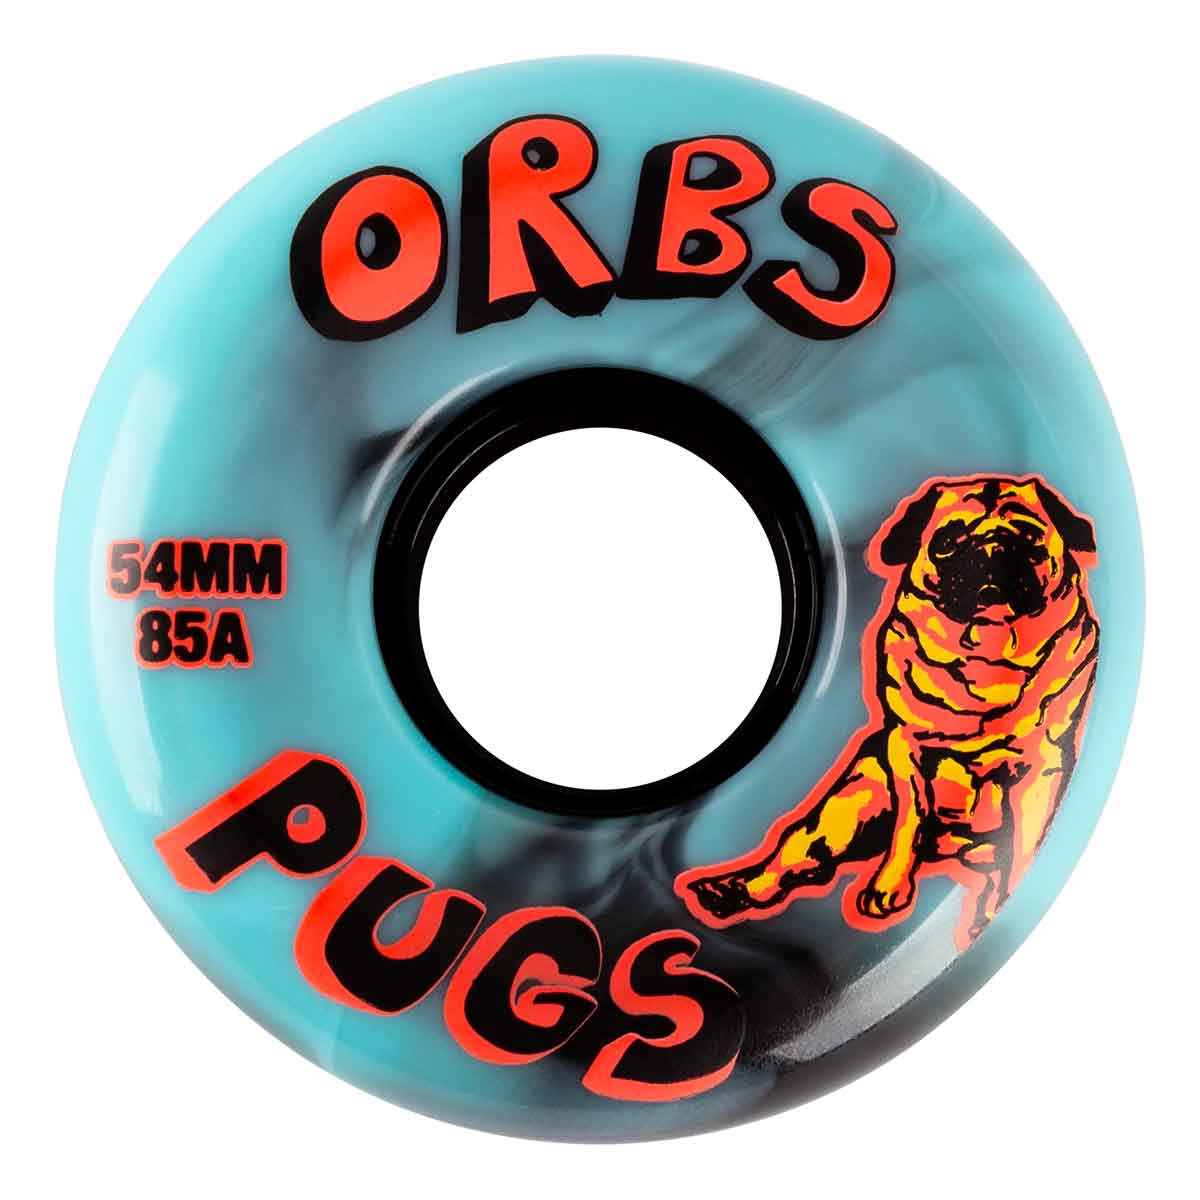 ORBS WHEELS - PUGS 85A BLACK/BLUE SWIRLS (54MM)